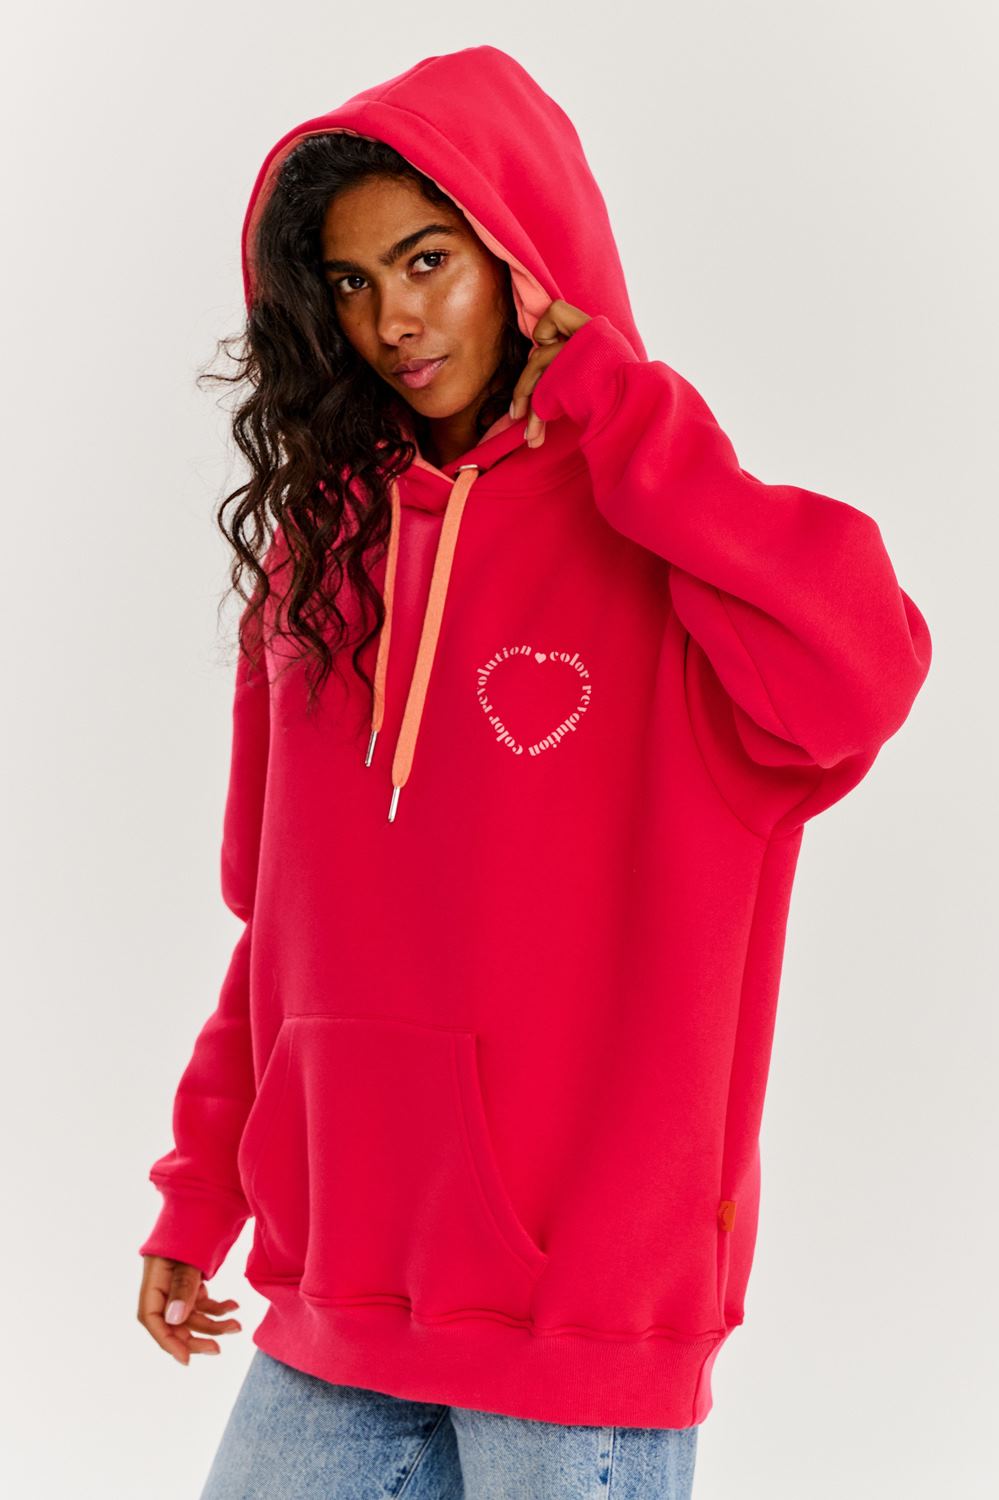 Amor hoodie